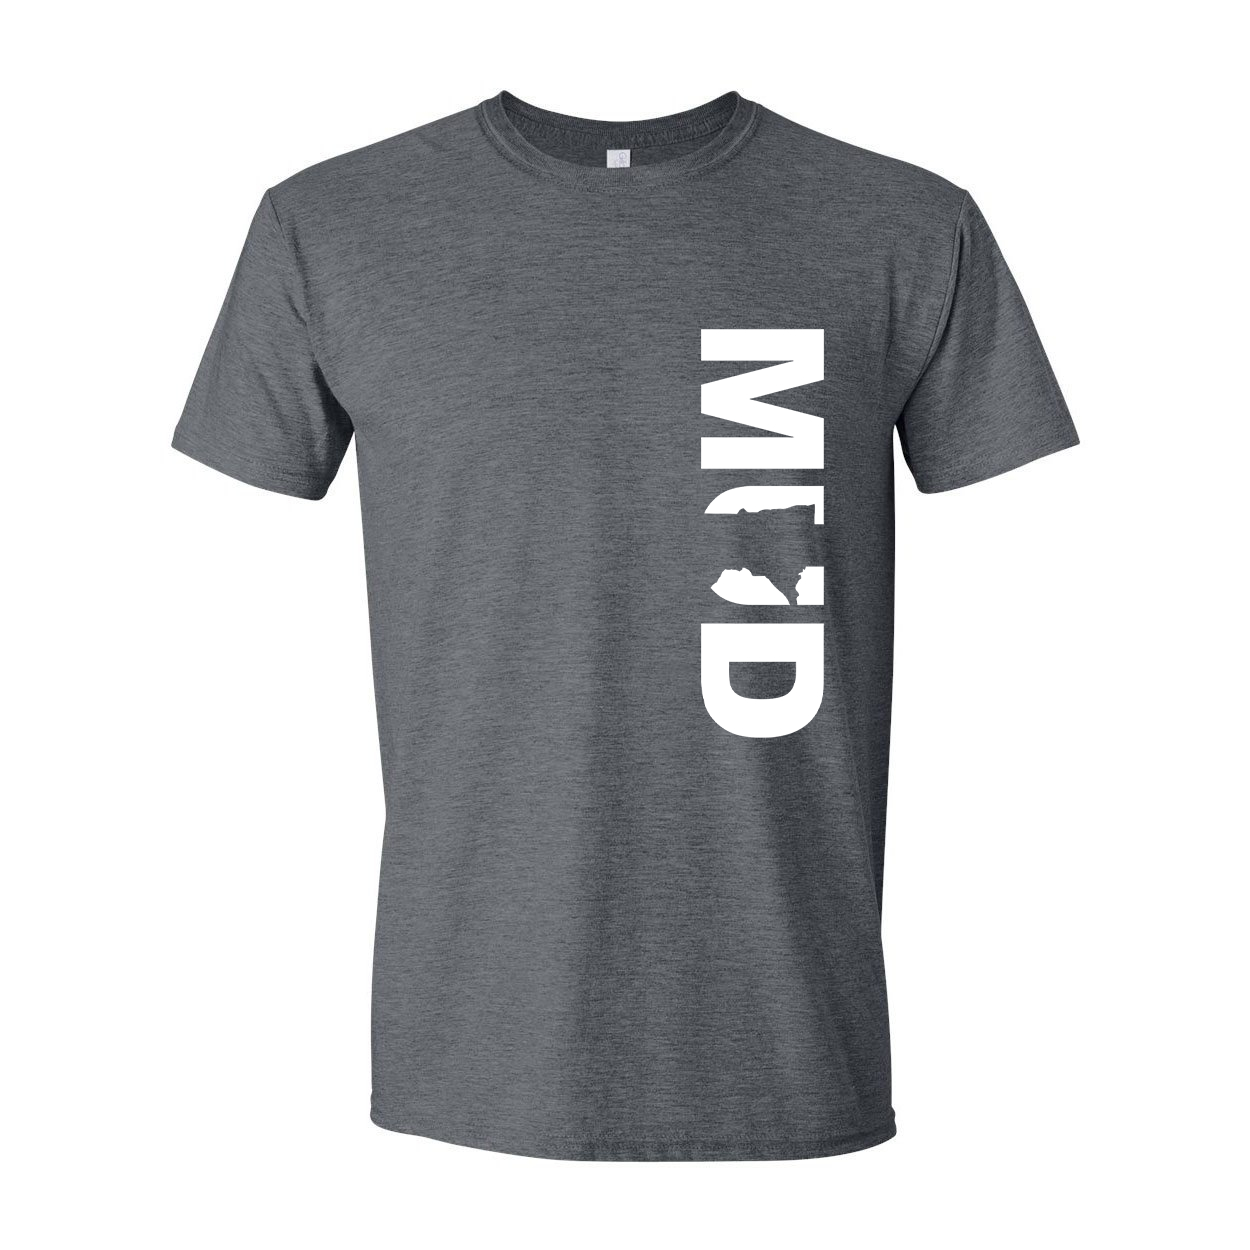 Mud Minnesota Classic Vertical T-Shirt Dark Heather Gray (White Logo)